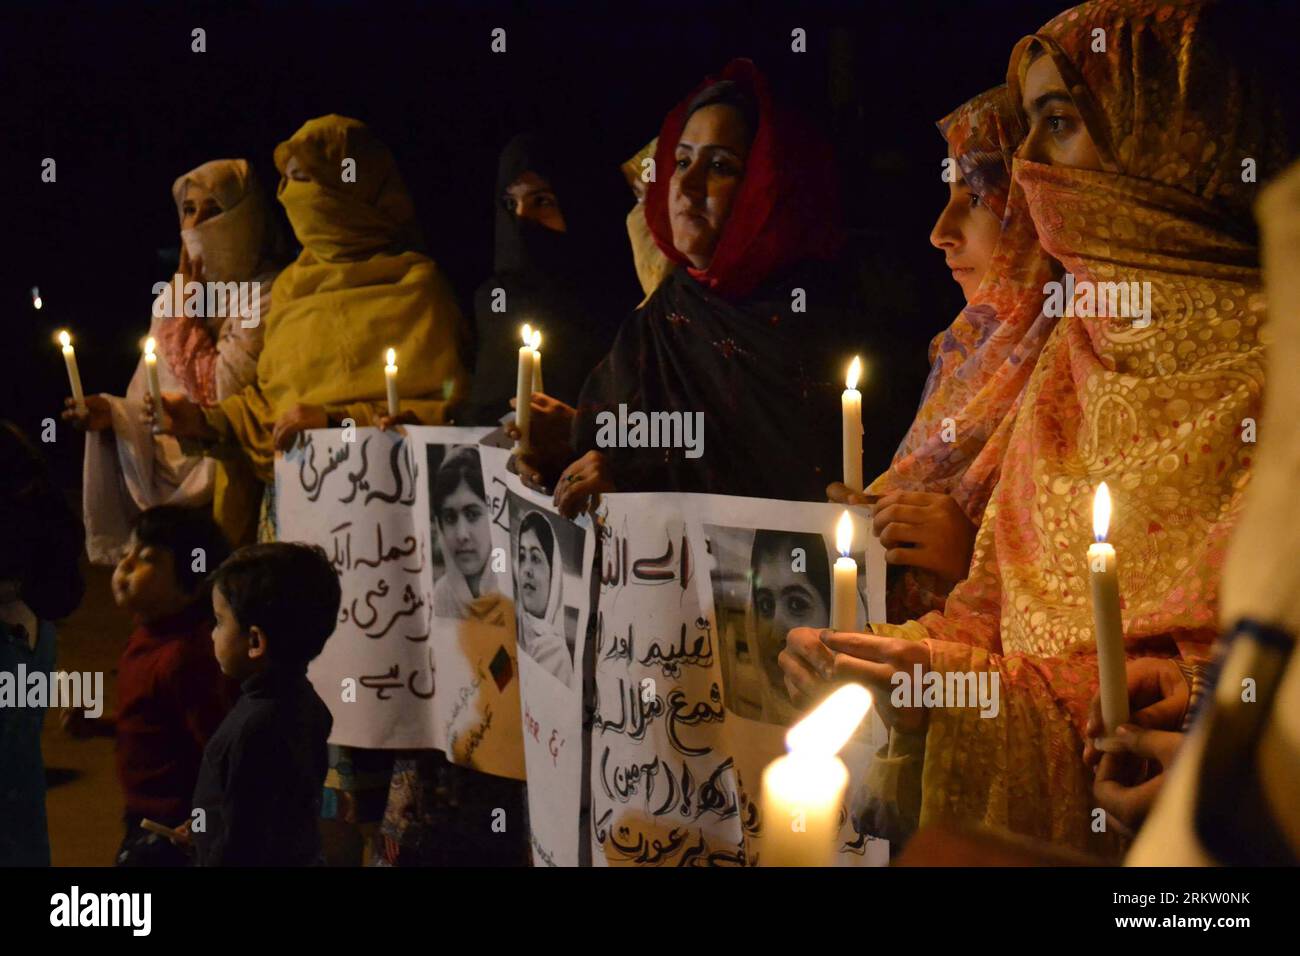 Bildnummer : 58583715 Datum : 12.10.2012 Copyright : imago/Xinhua (121012) -- QUETTA, 12 octobre 2012 (Xinhua) -- des Pakistanais tiennent des bougies pour rendre hommage à Malala Yousafzai, militante des droits de l'enfant âgée de 14 ans, qui a reçu une balle dans la tête lors d'une tentative d'assassinat des talibans, à Quetta, dans le sud-ouest du Pakistan, le 12 octobre 2012. Les Pakistanais dans les mosquées à travers le pays ont prié vendredi pour le rétablissement de Malala, les médecins ont déclaré que les deux prochains jours étaient critiques. (Xinhua/Mohammad) PAKISTAN-CHILDREN-ACTIVIST-PRAY PUBLICATIONxNOTxINxCHN Politik Gesellschaft Glaube religion Gebet Aktivistin Kinderrechte Anschlag Mordanschl Banque D'Images